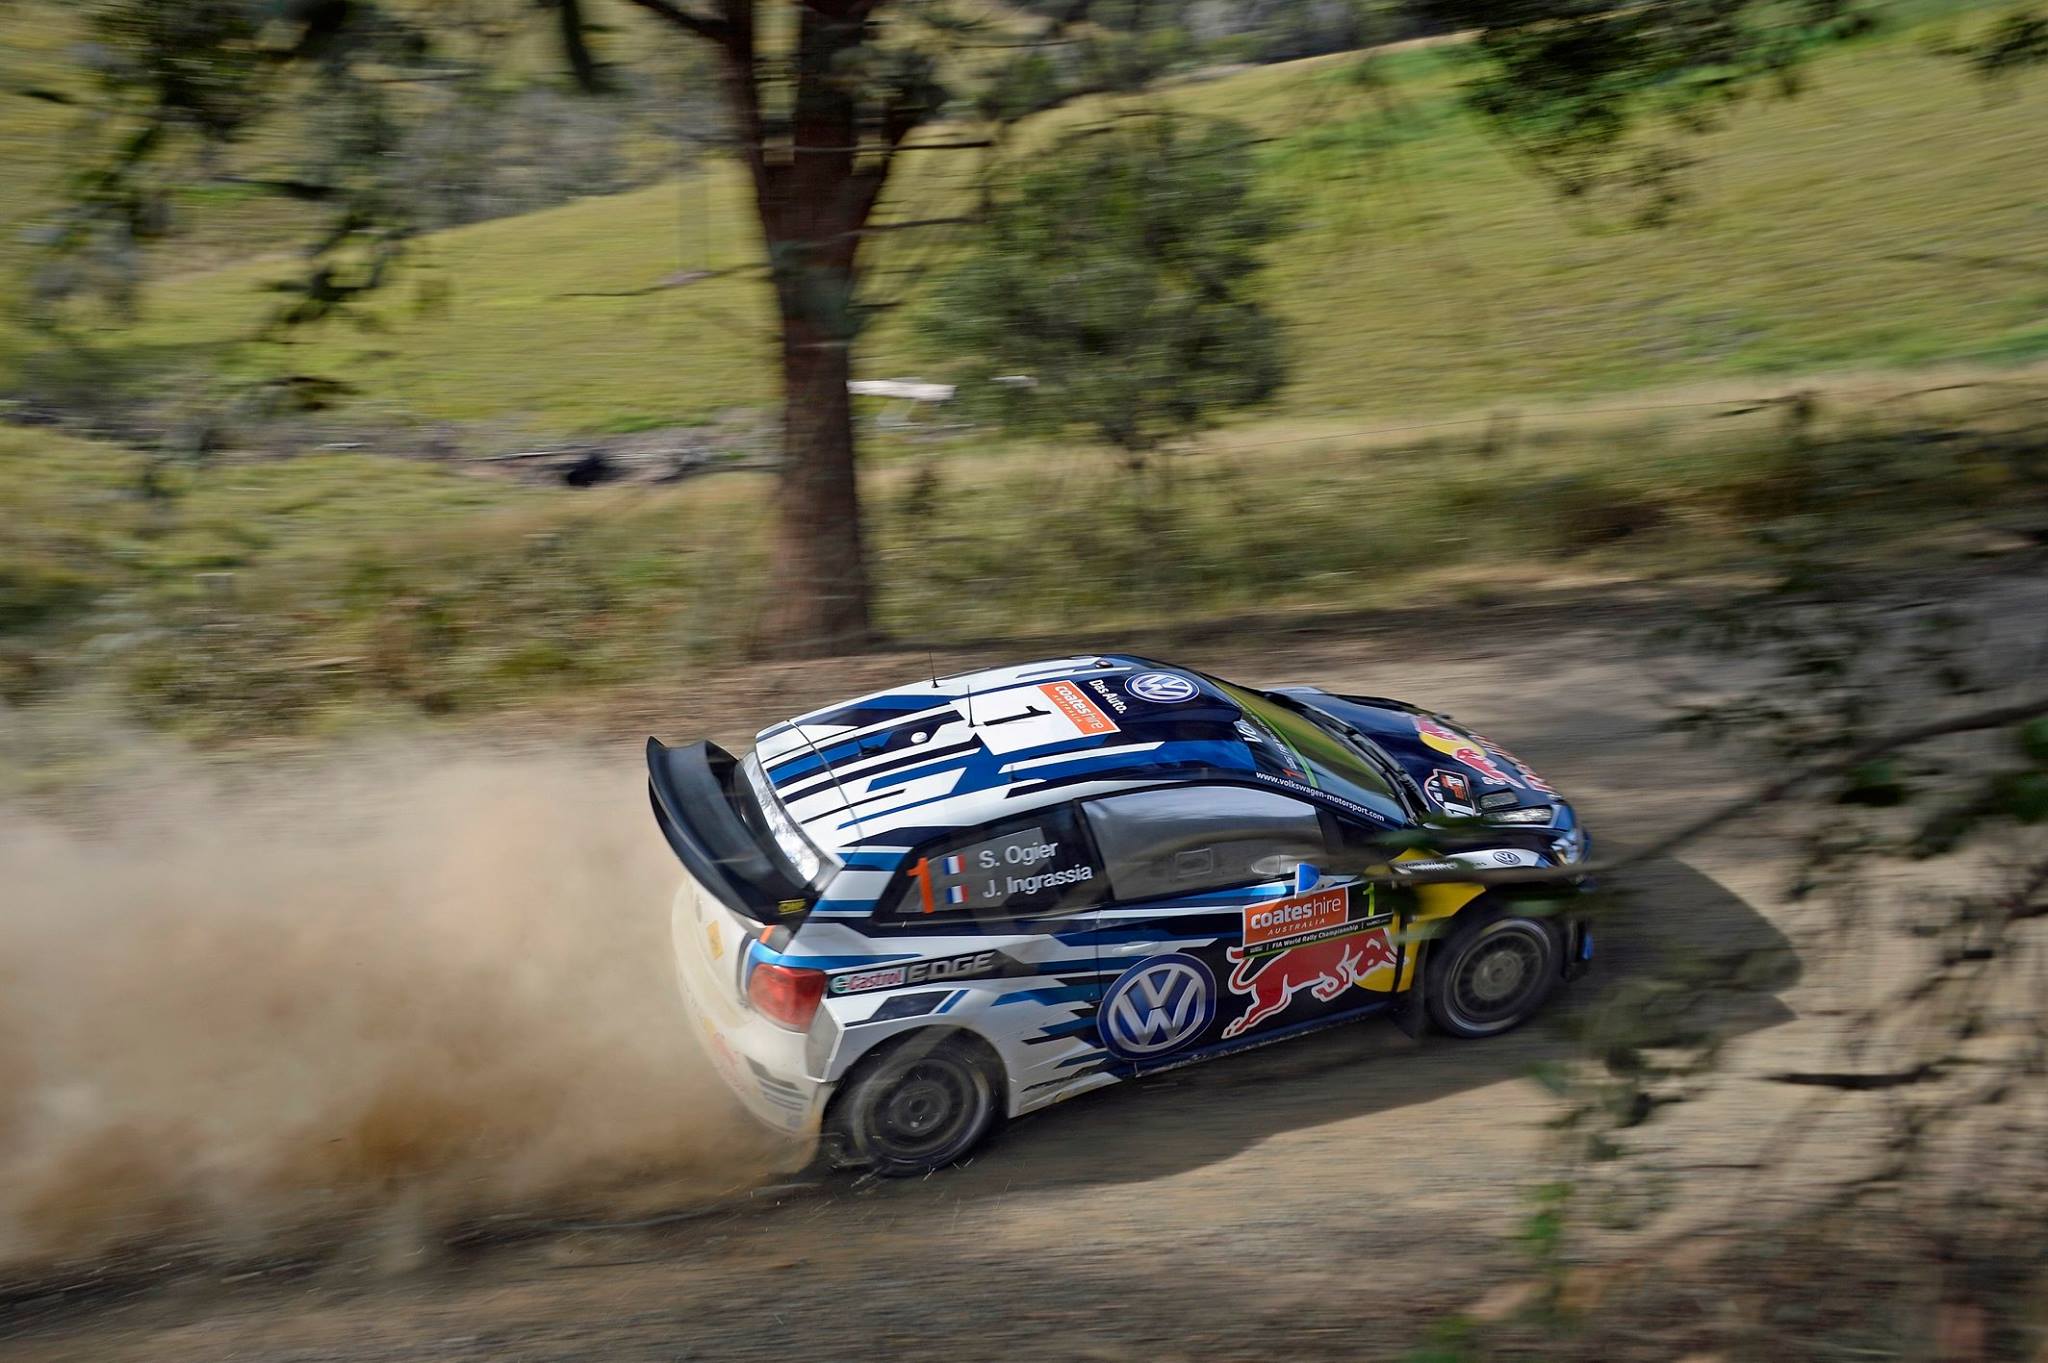 Résultat Rallye WRC d'Australie : Replay vidéo course, classement et départ de Volkswagen